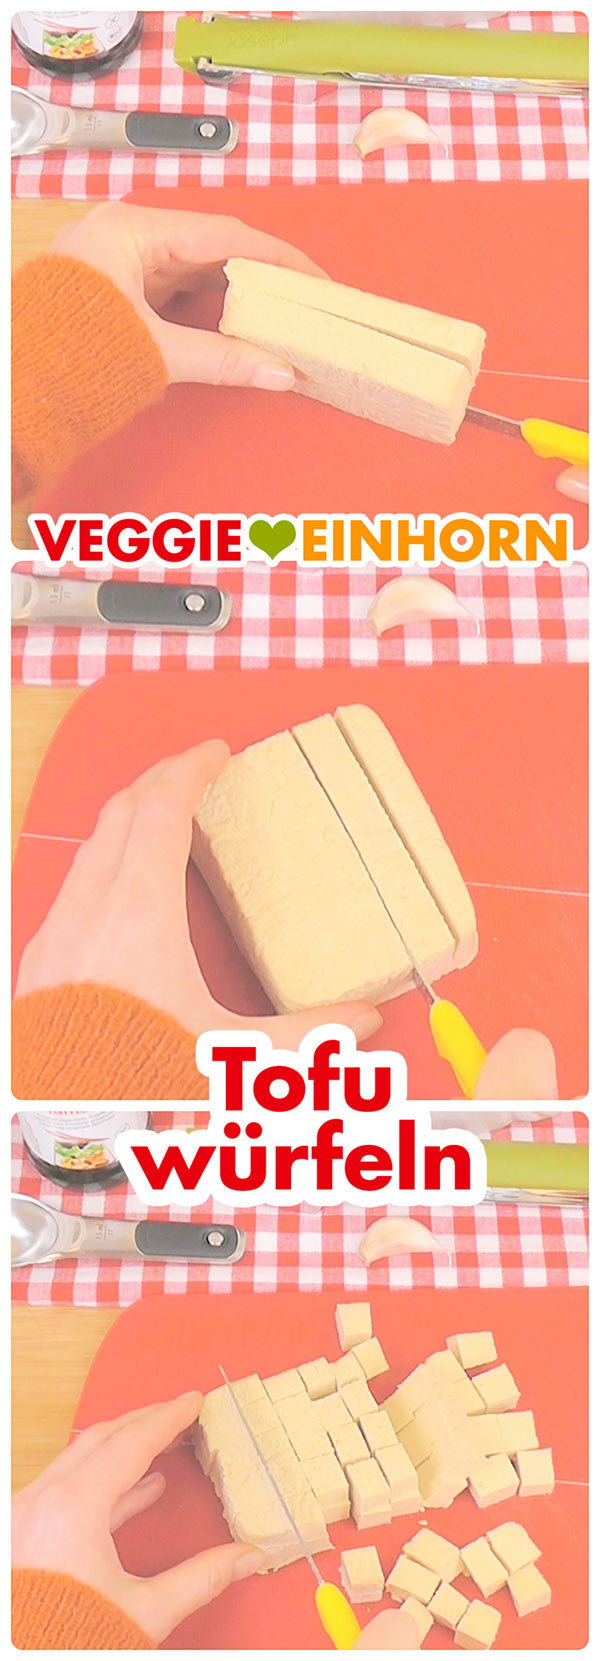 Tofu würfeln